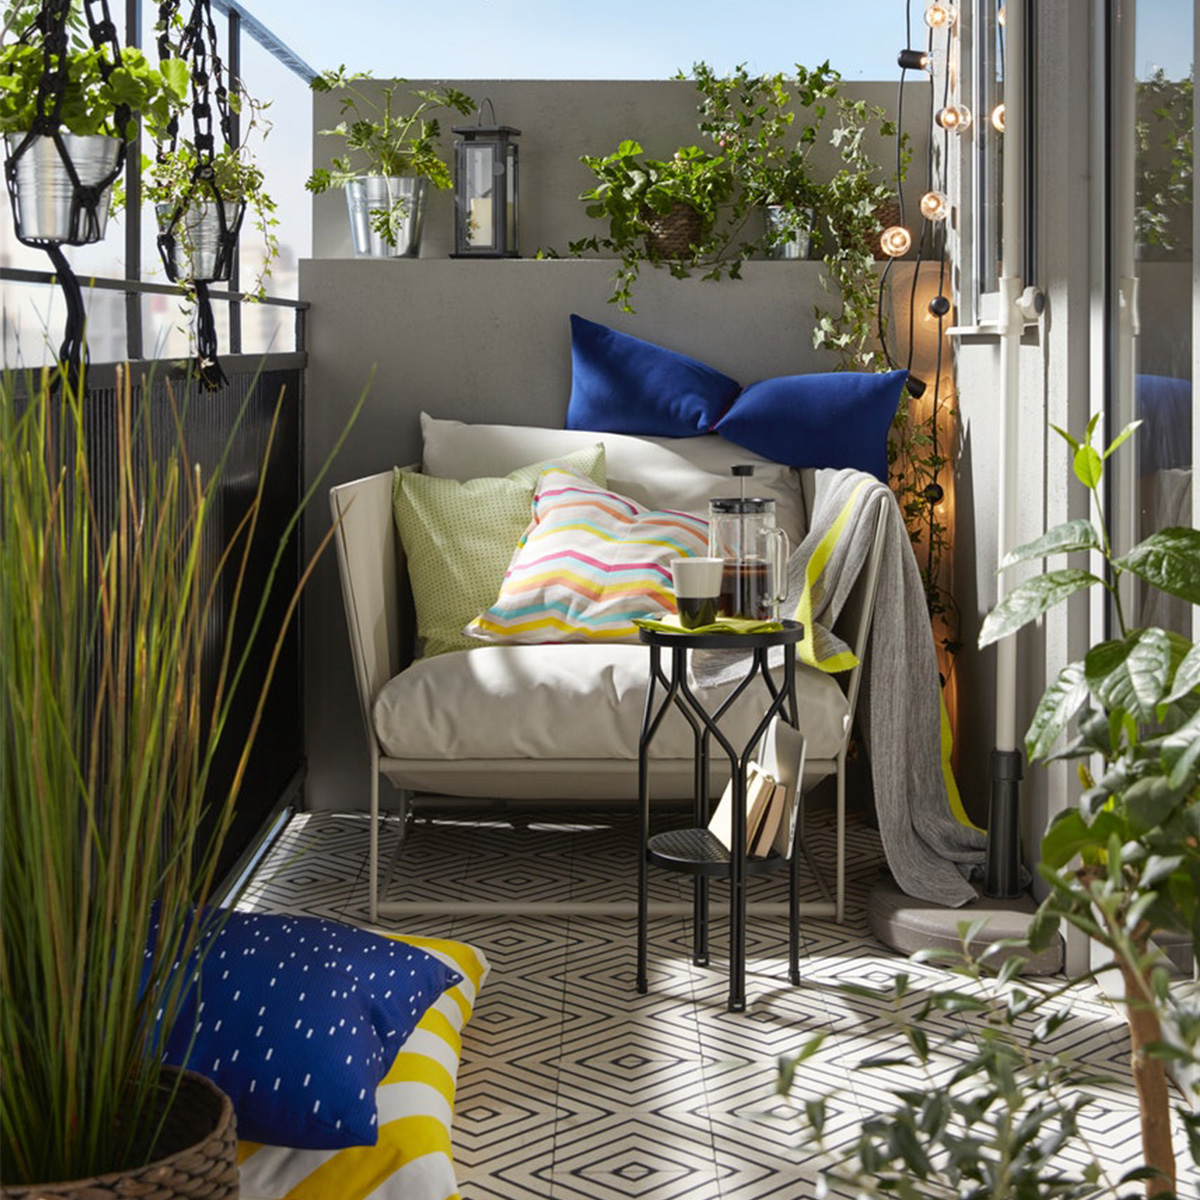 petit salon de jardin pour balcon luxe idees pour l amenagement du jardin ikea de petit salon de jardin pour balcon